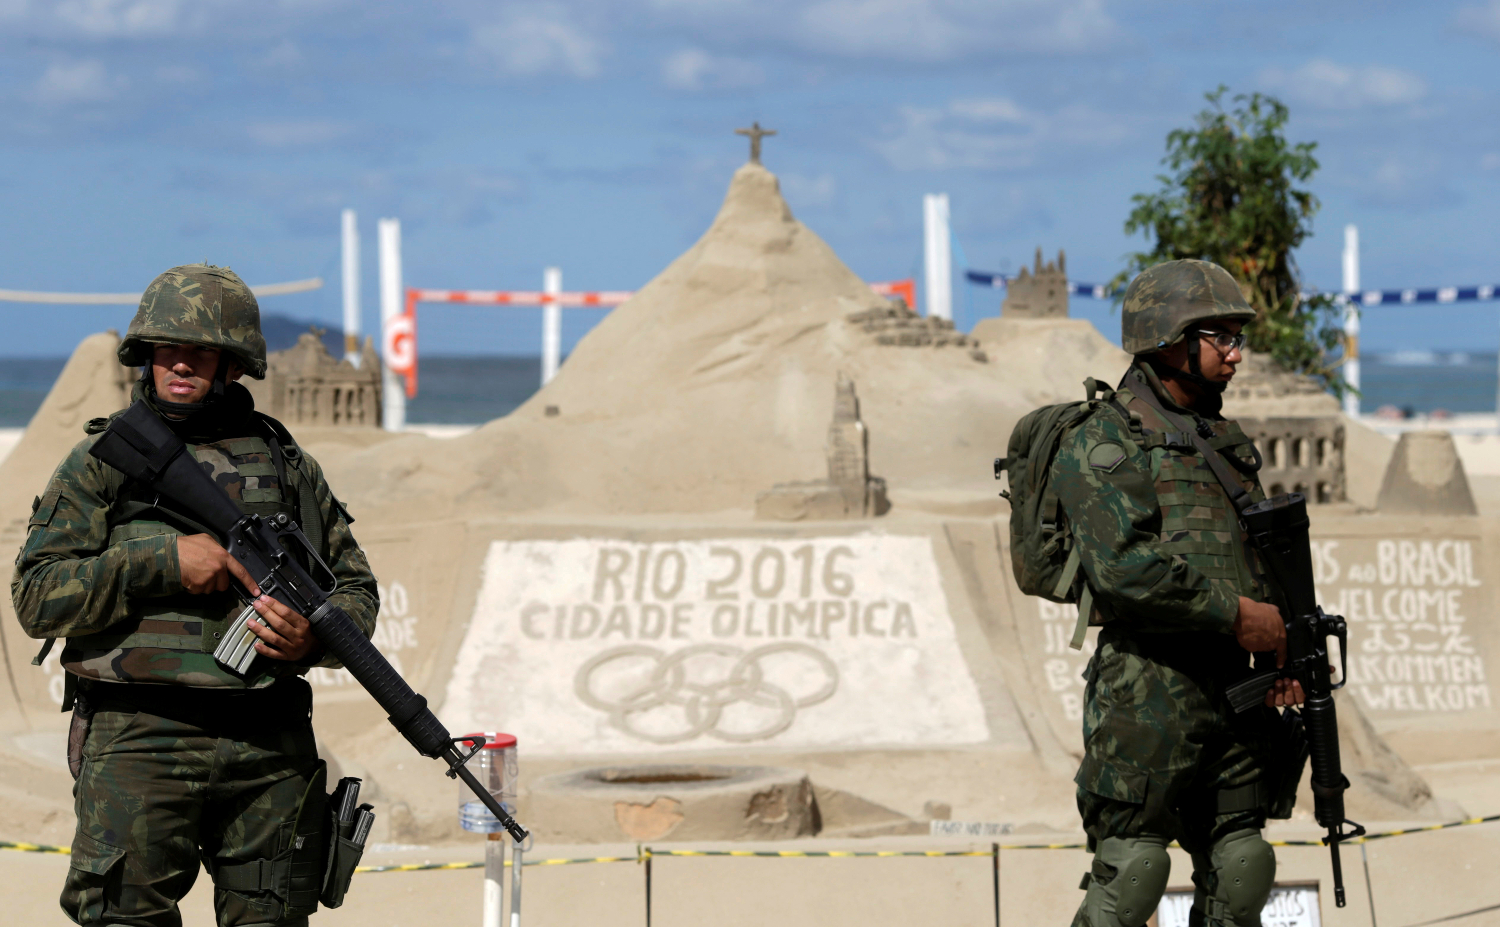 El mensaje amenazante del grupo brasileño leal al ISIS a menos de un mes de los JJOO